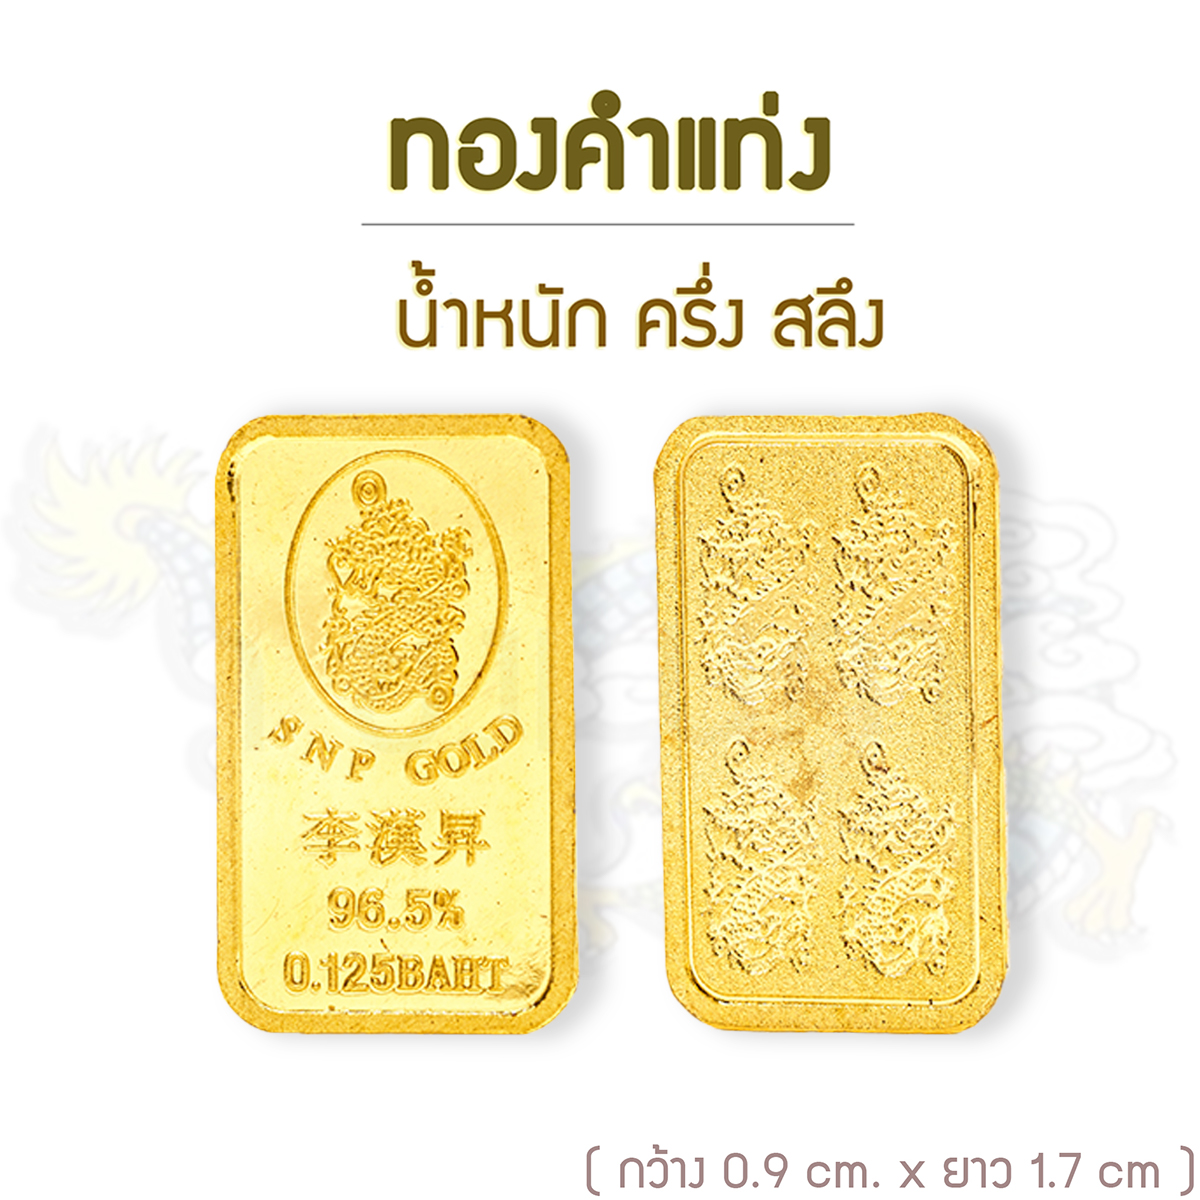 SSNP GOLD 7ทองคำแท่งแท้ 96.5% น้ำหนักครึ่งสลึง พร้อมใบรับประกันทอง